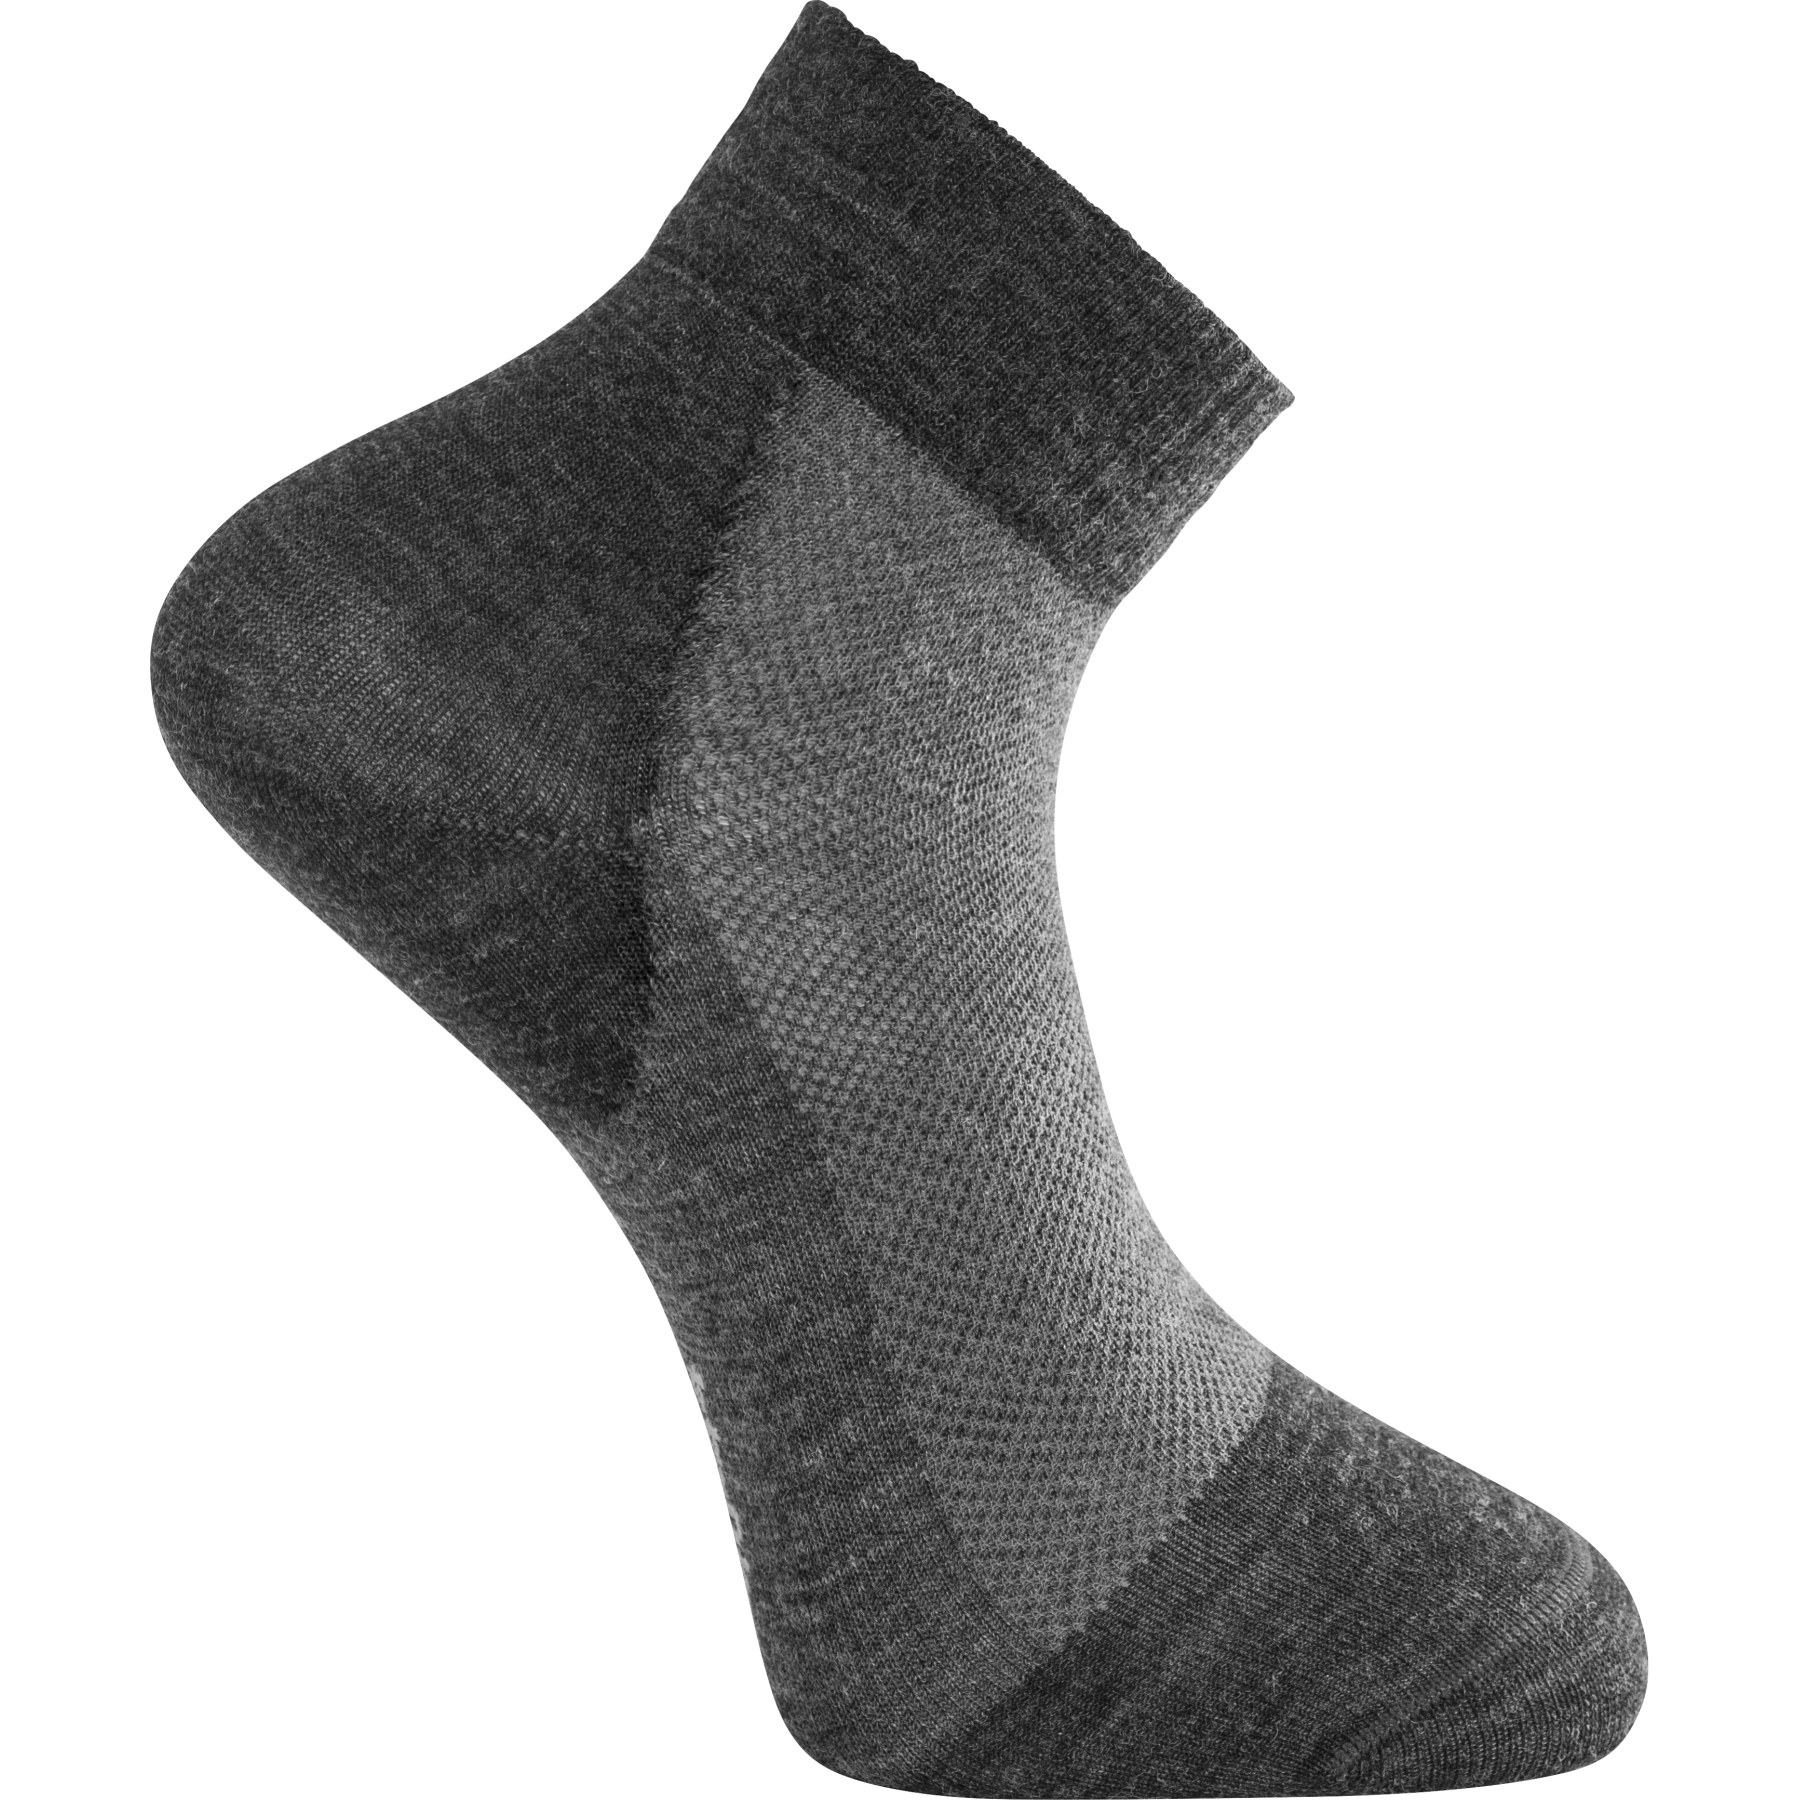 Bild von Woolpower Skilled Liner Short Socken - dark grey-grey